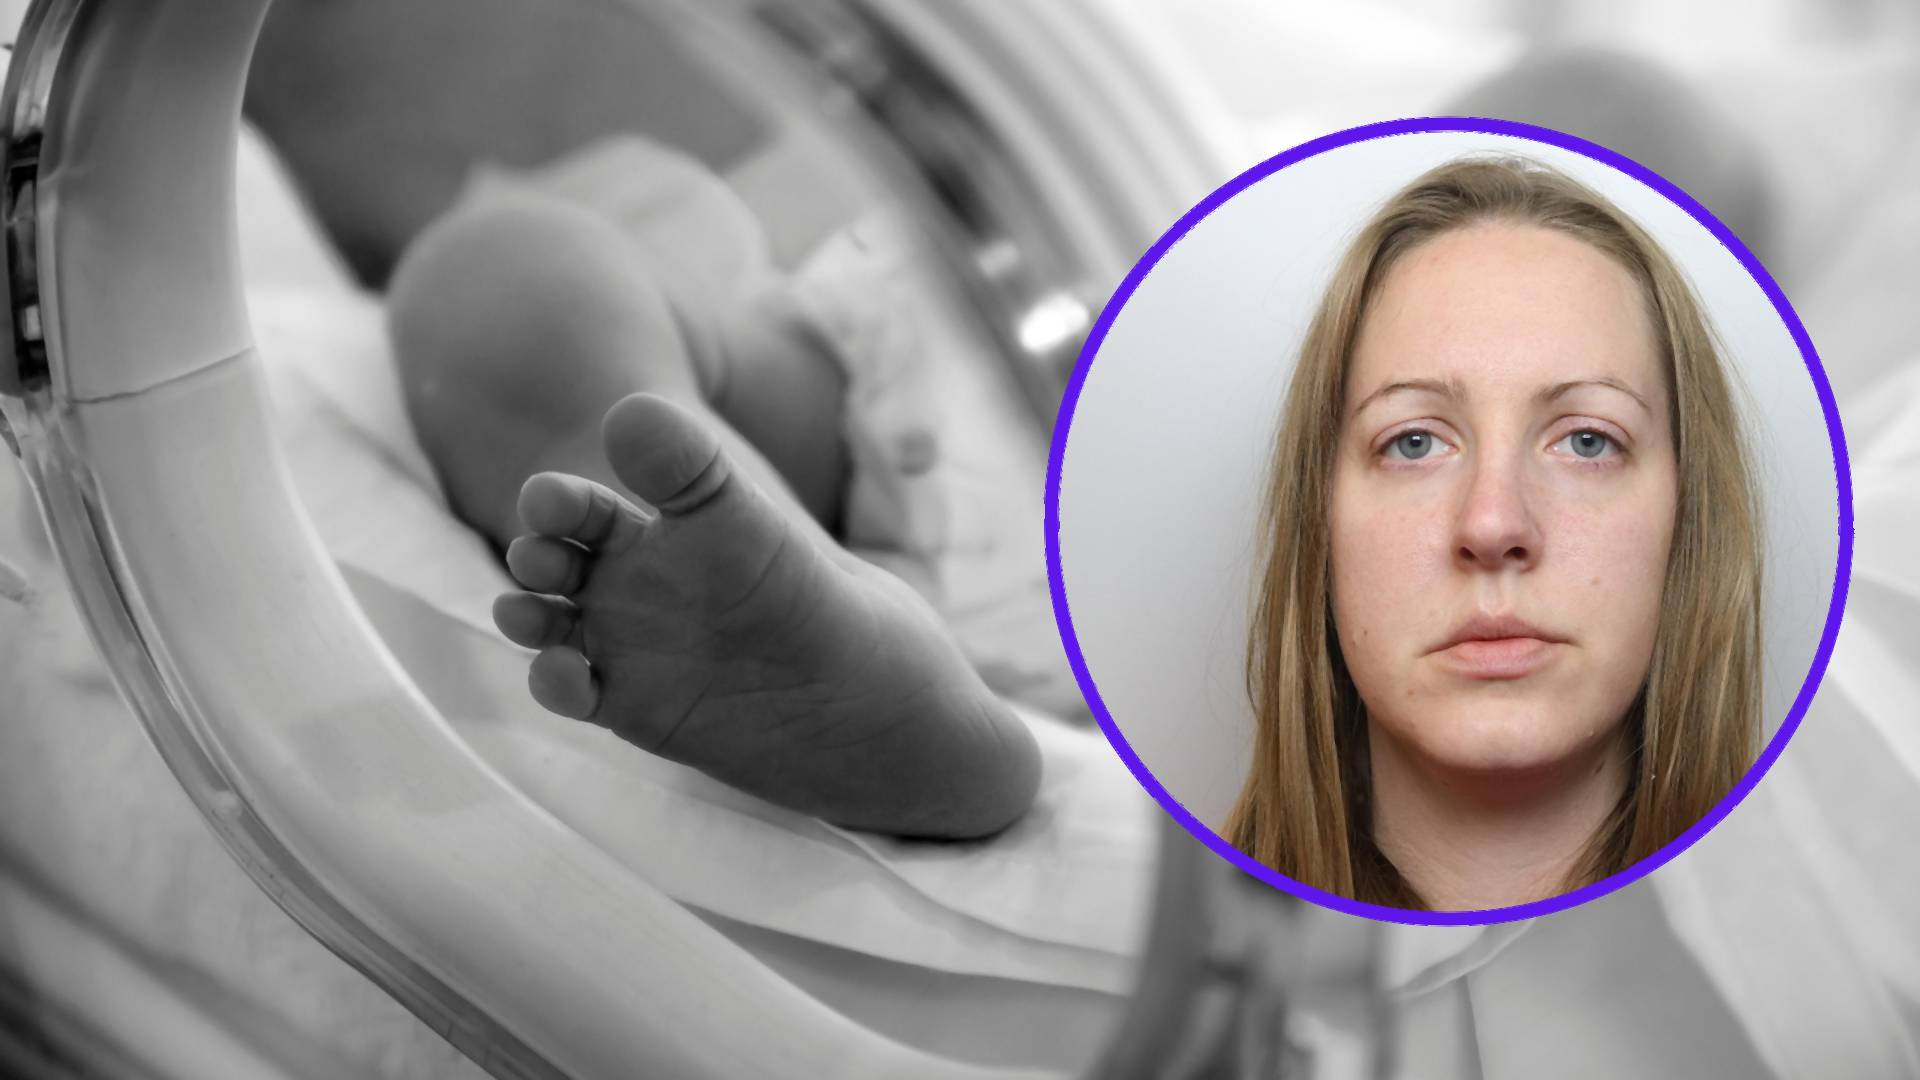 Pielęgniarka mordowała noworodki. "Wyrachowana i bezduszna zabójczyni"